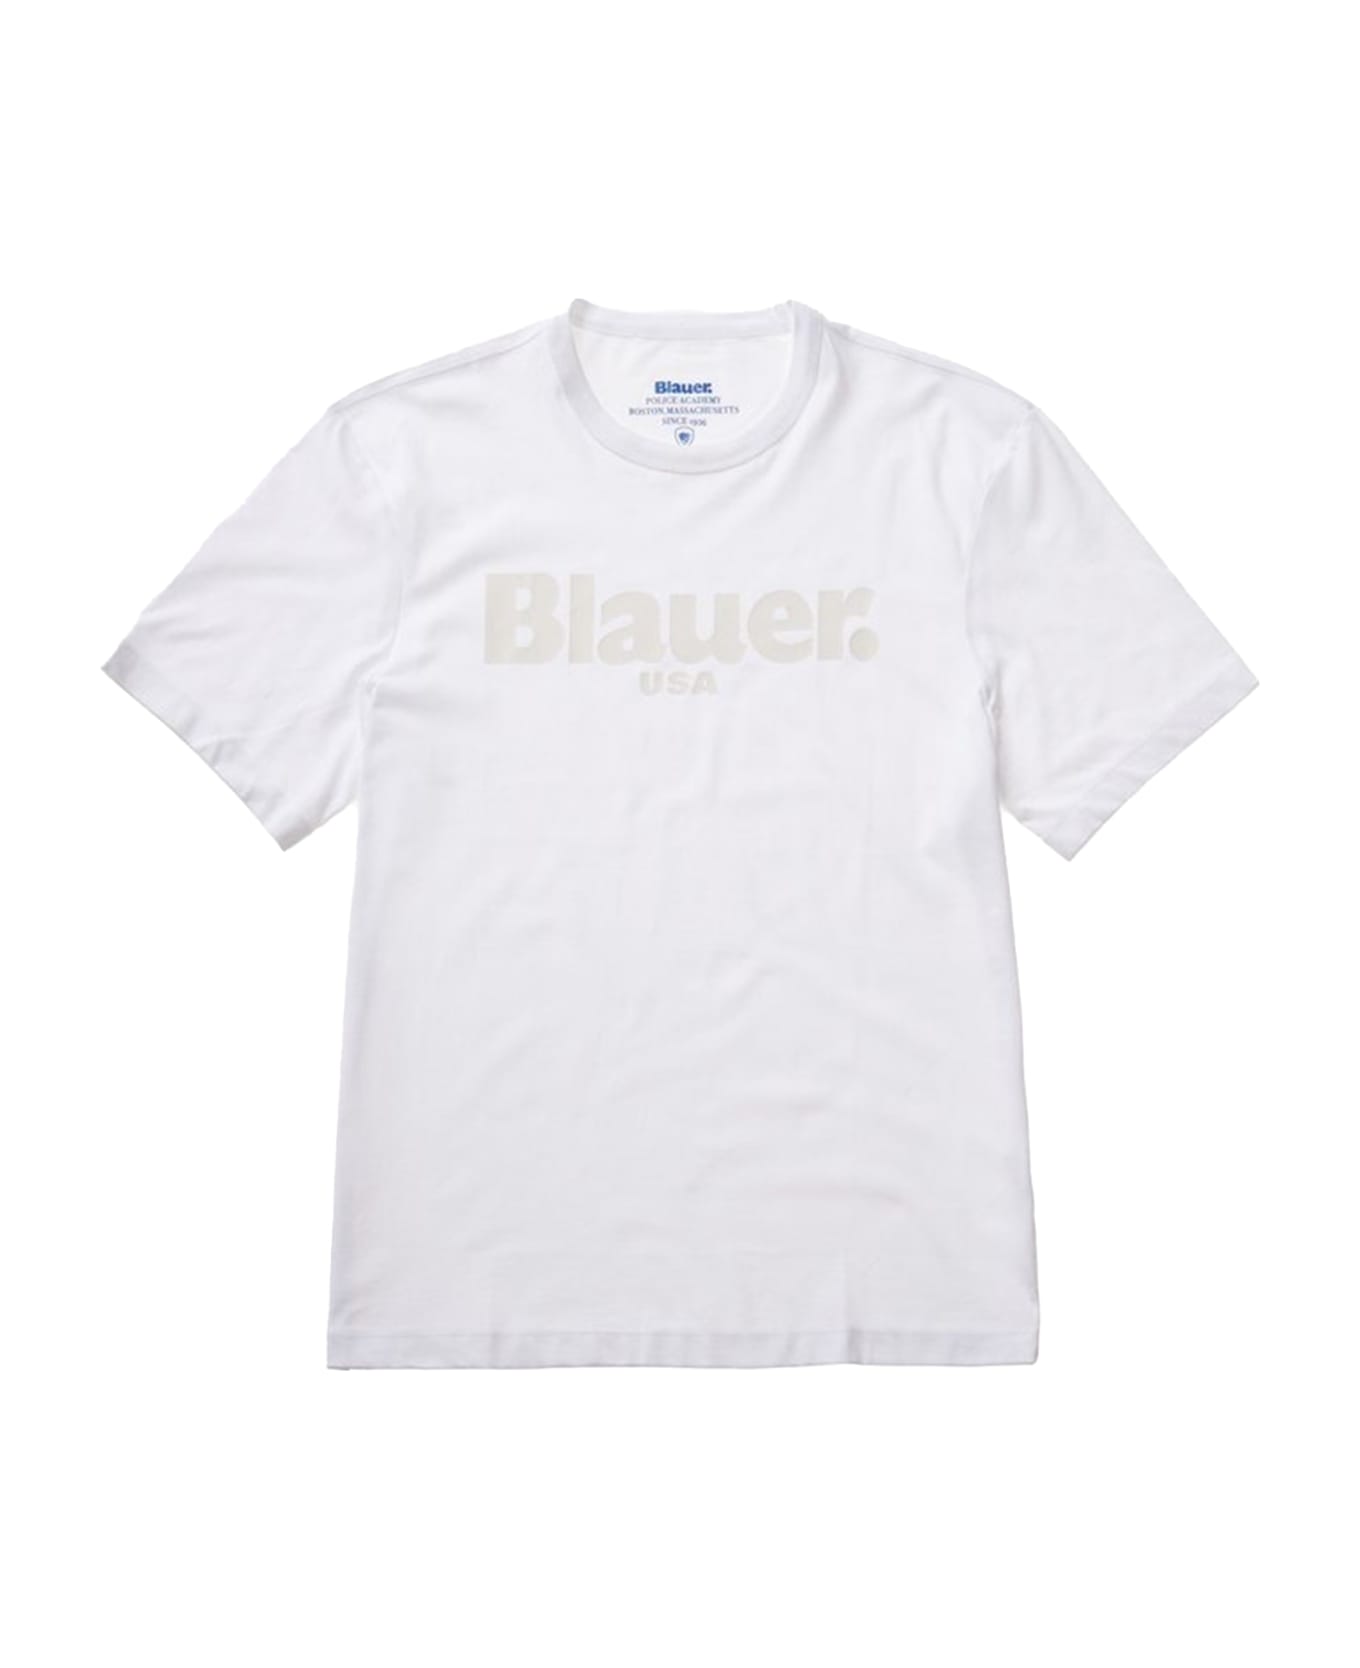 Blauer T-Shirt - BIANCO OTTICO シャツ